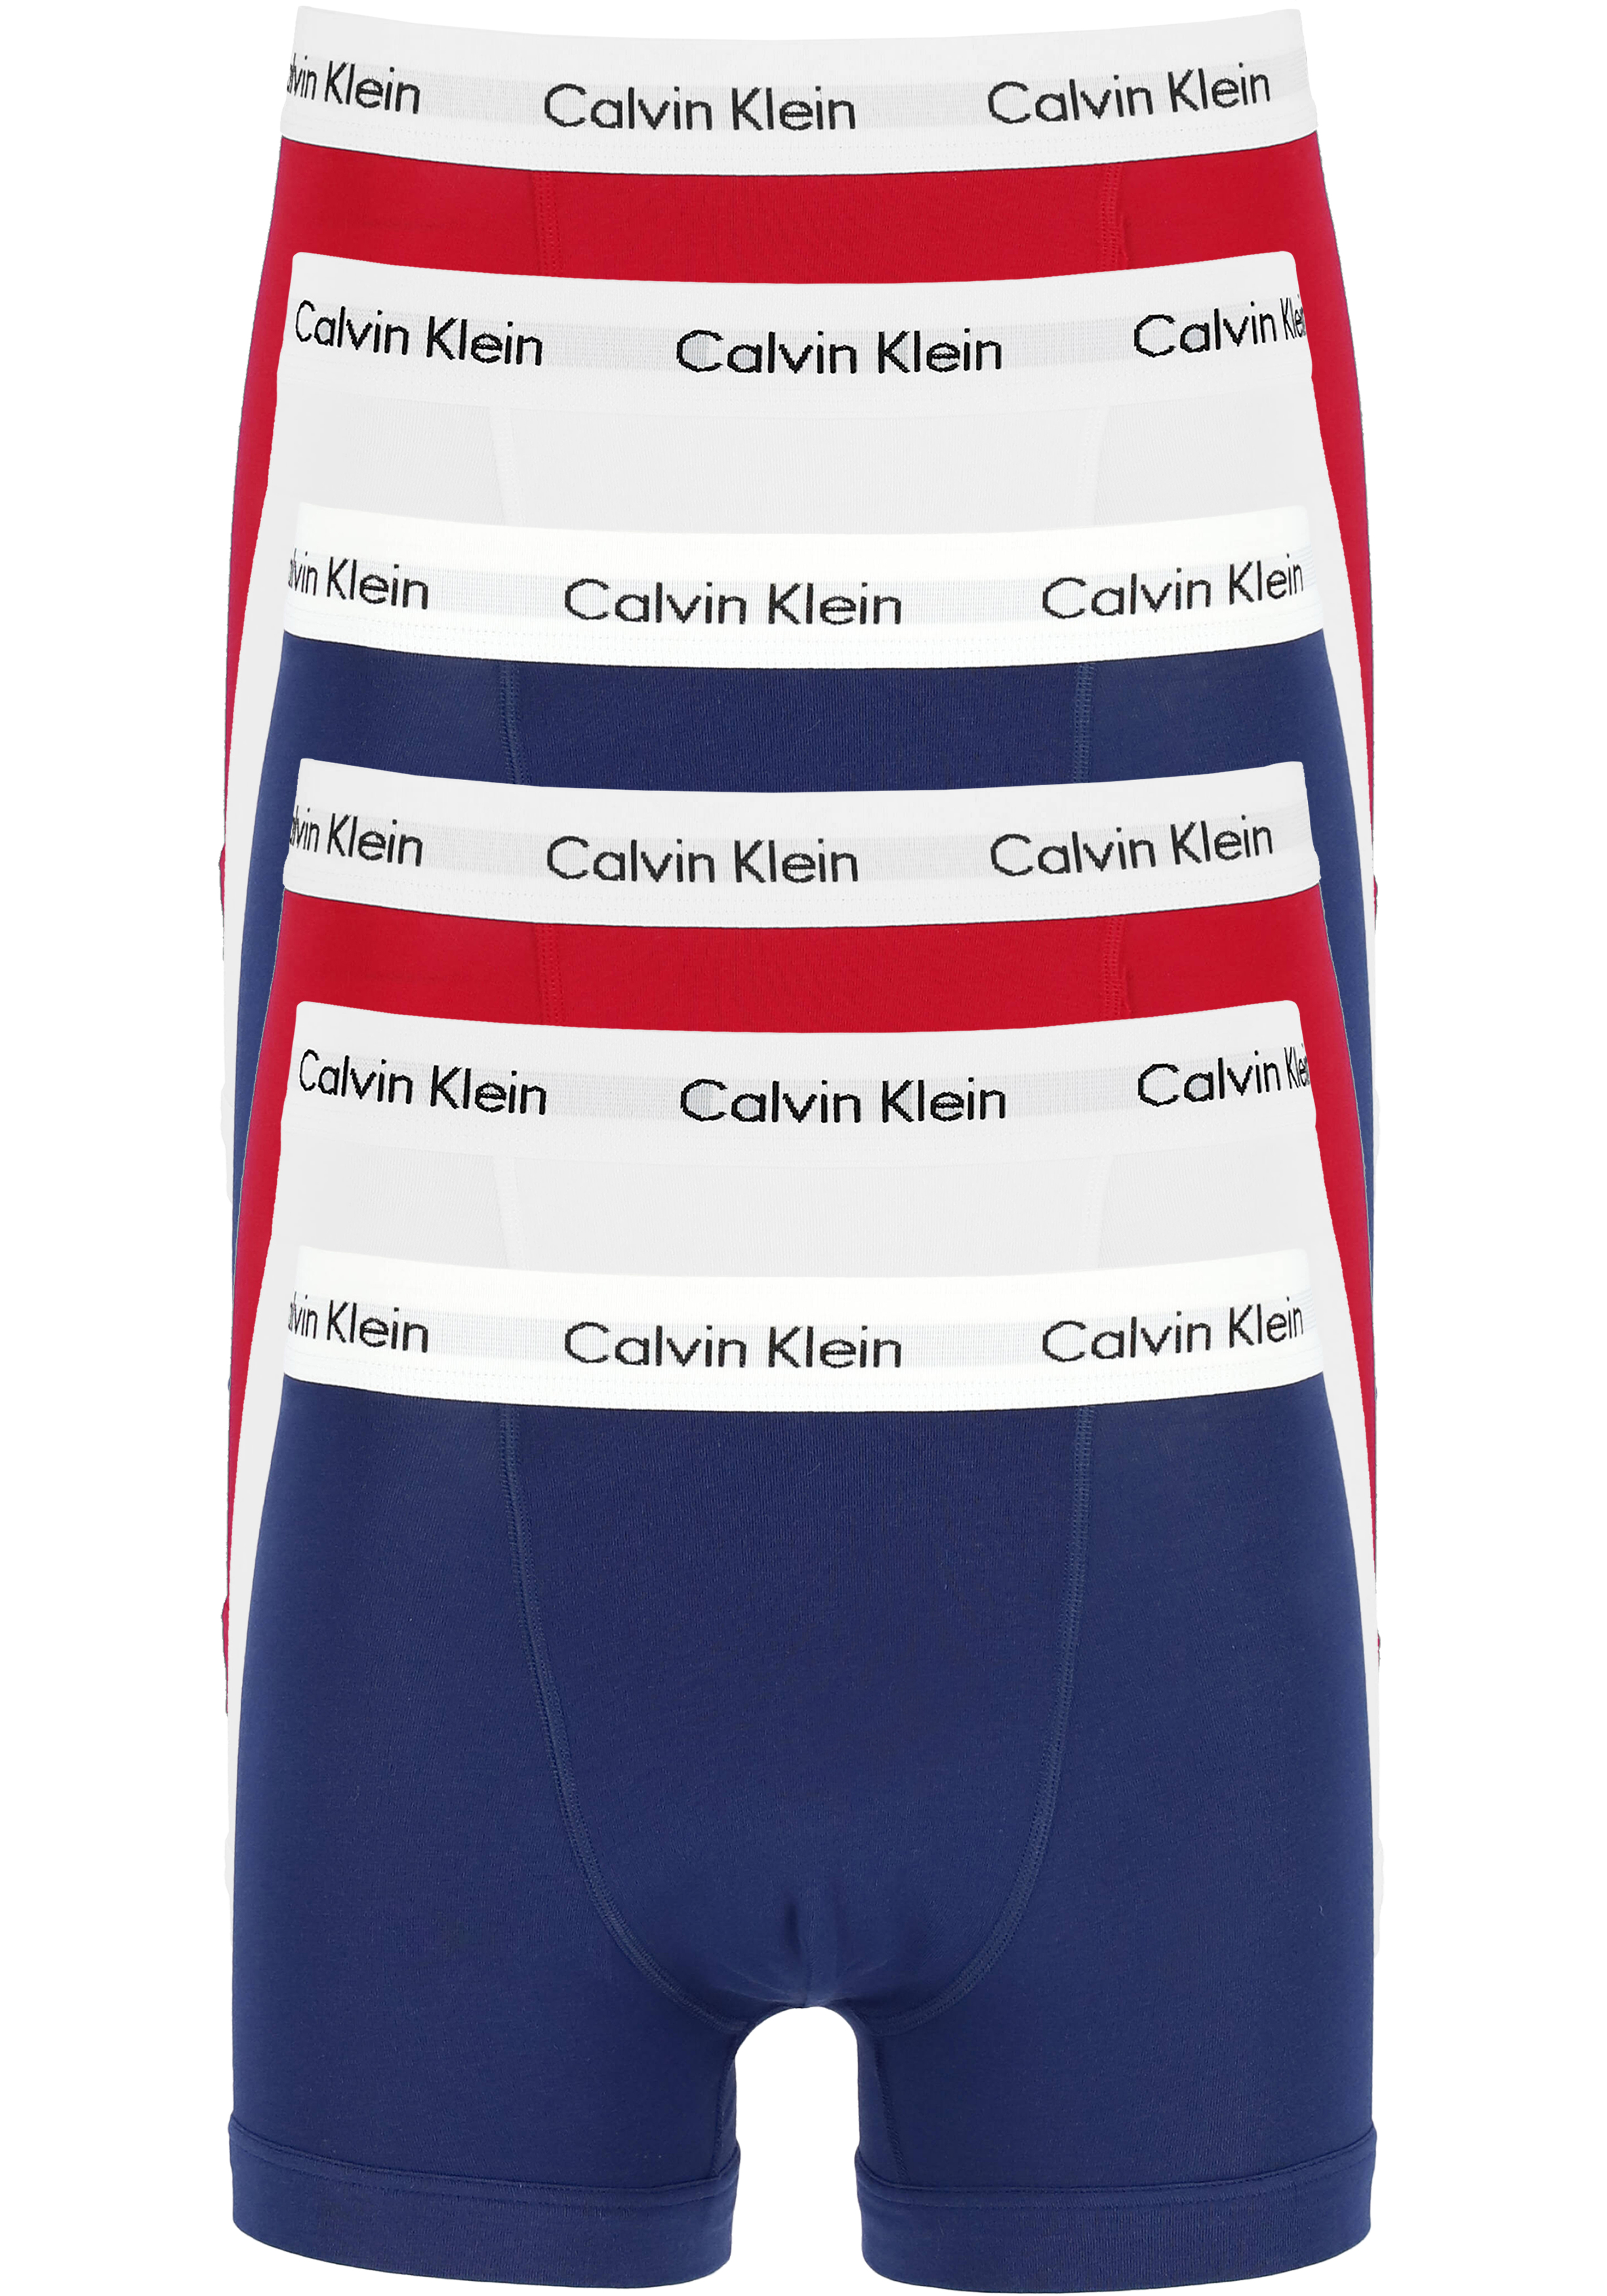 Uitvoerder Regelen Kracht Actie 6-pack: Calvin Klein trunks, heren boxers normale lengte, rood,... -  vakantie DEALS: bestel vele artikelen van topmerken met korting